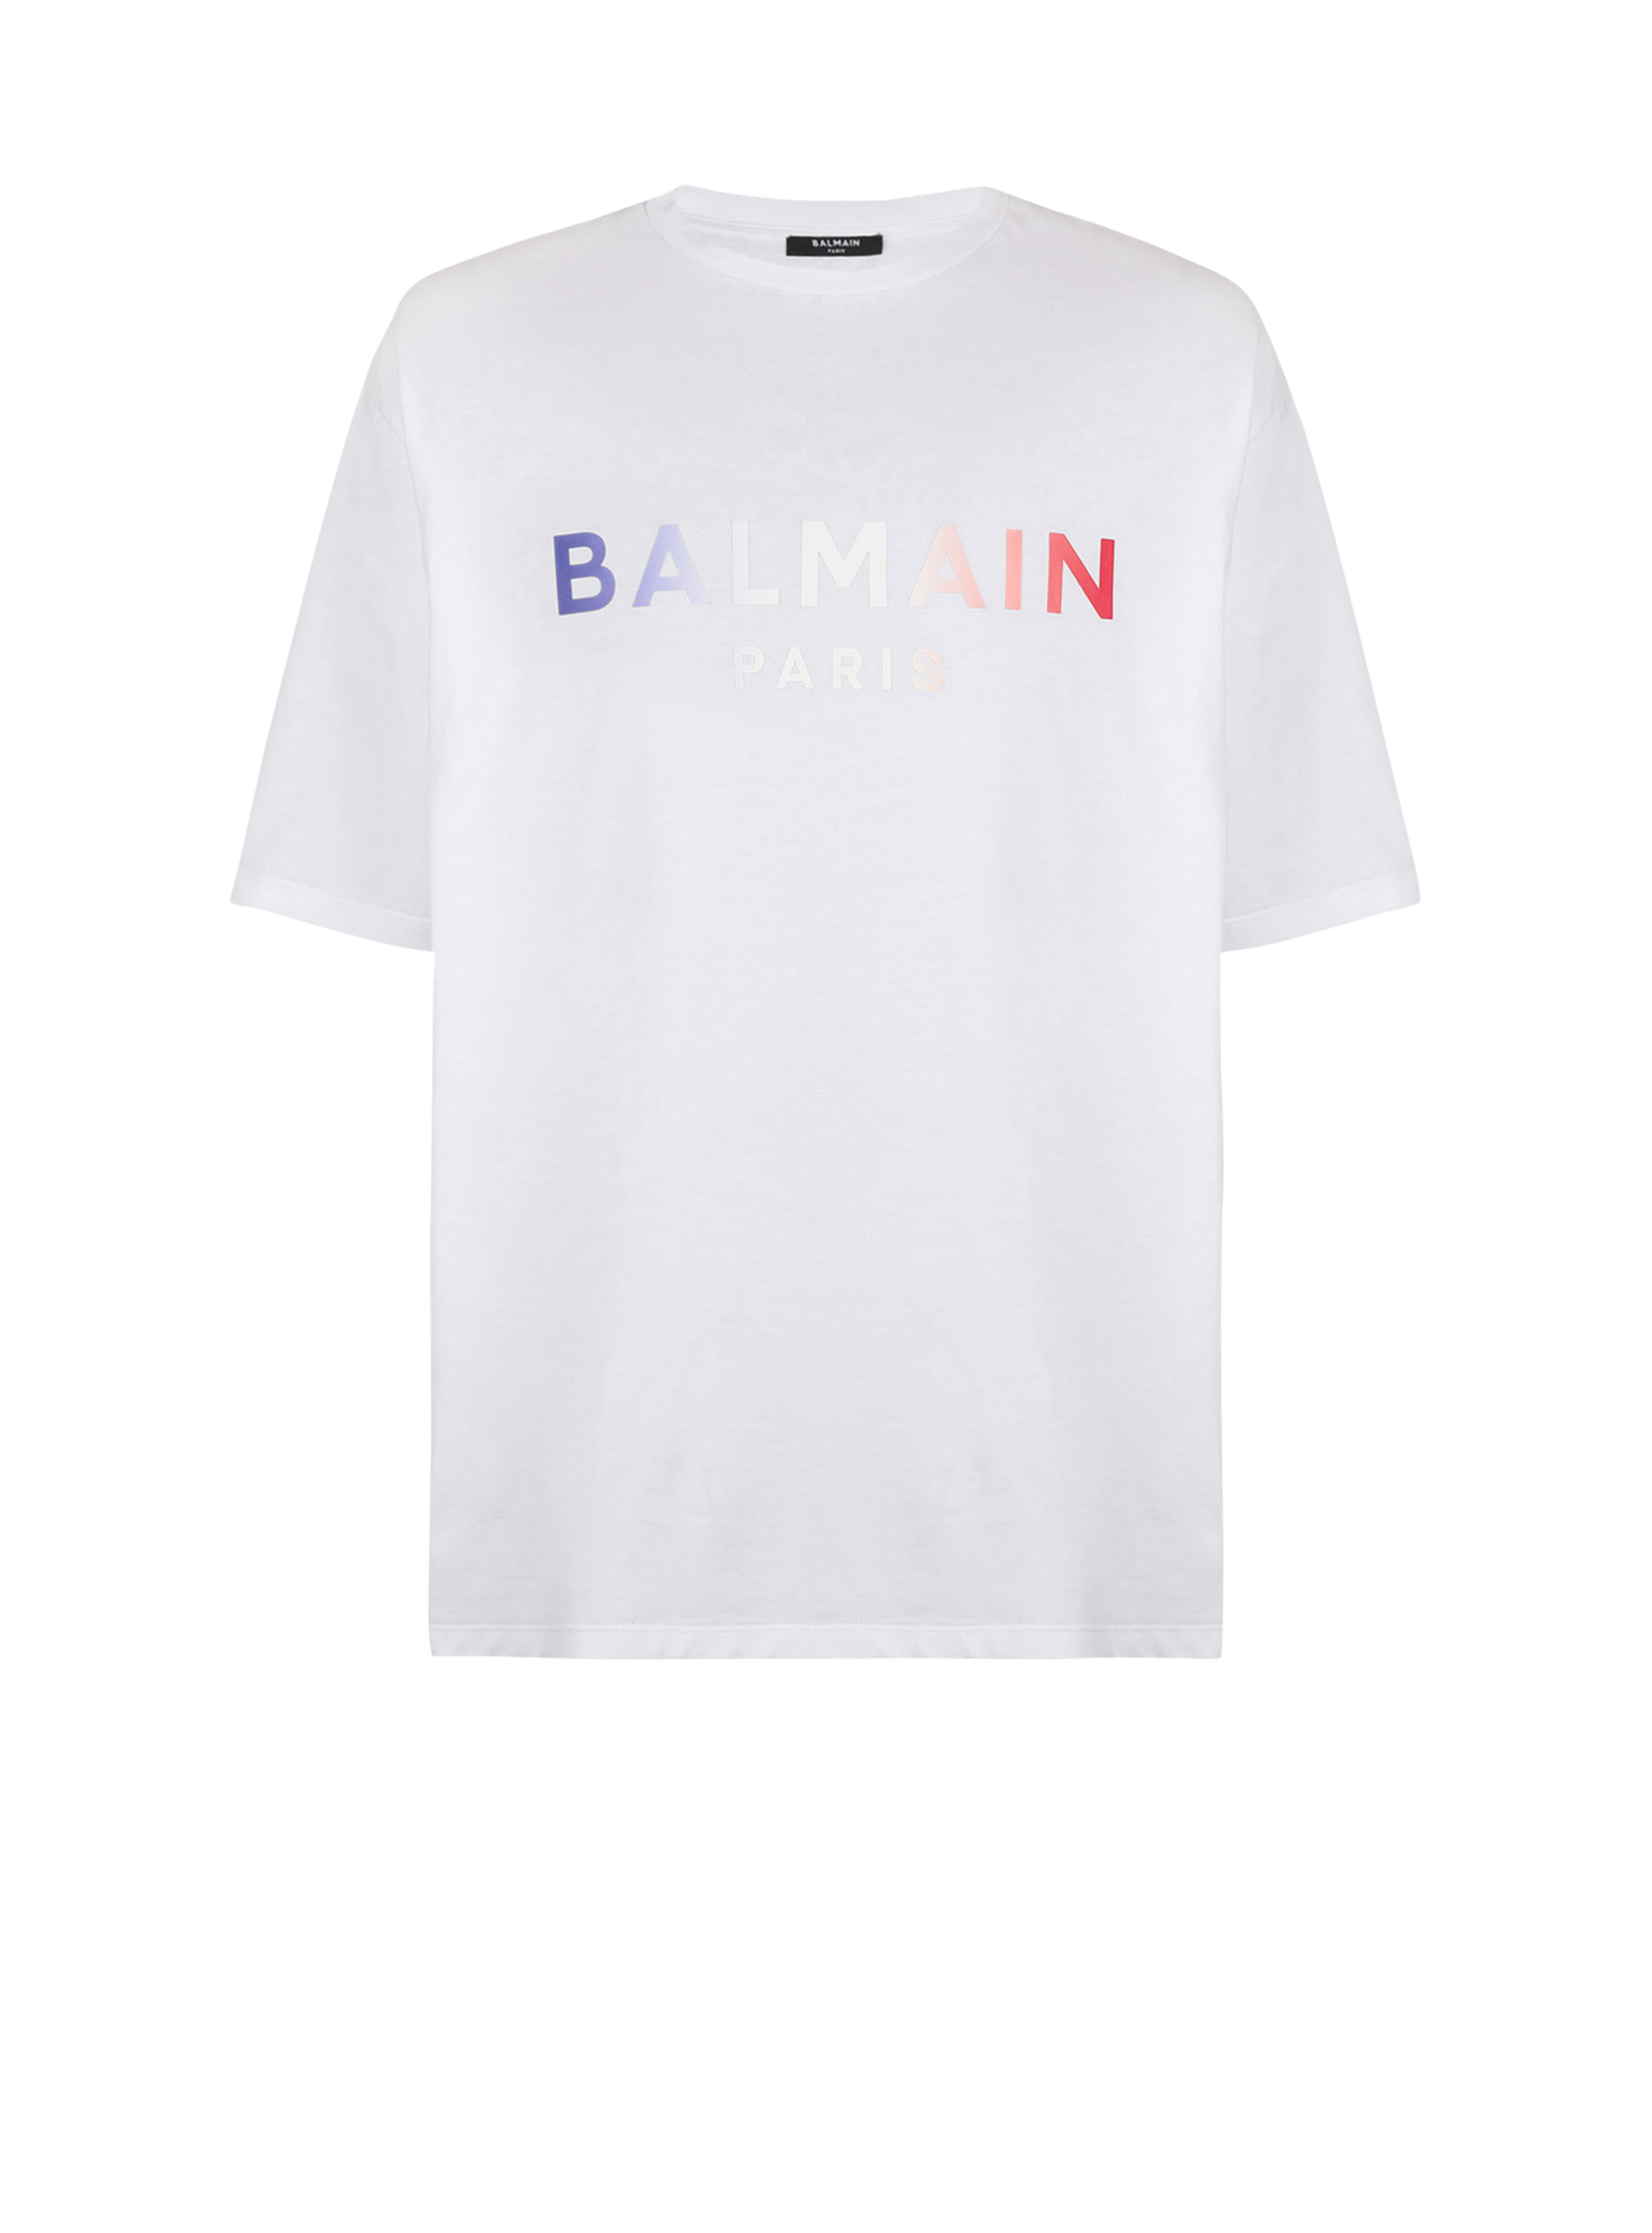 HIGH SUMMER CAPSULE -Cotton T-shirt with Balmain Paris tie-dye logo print, white